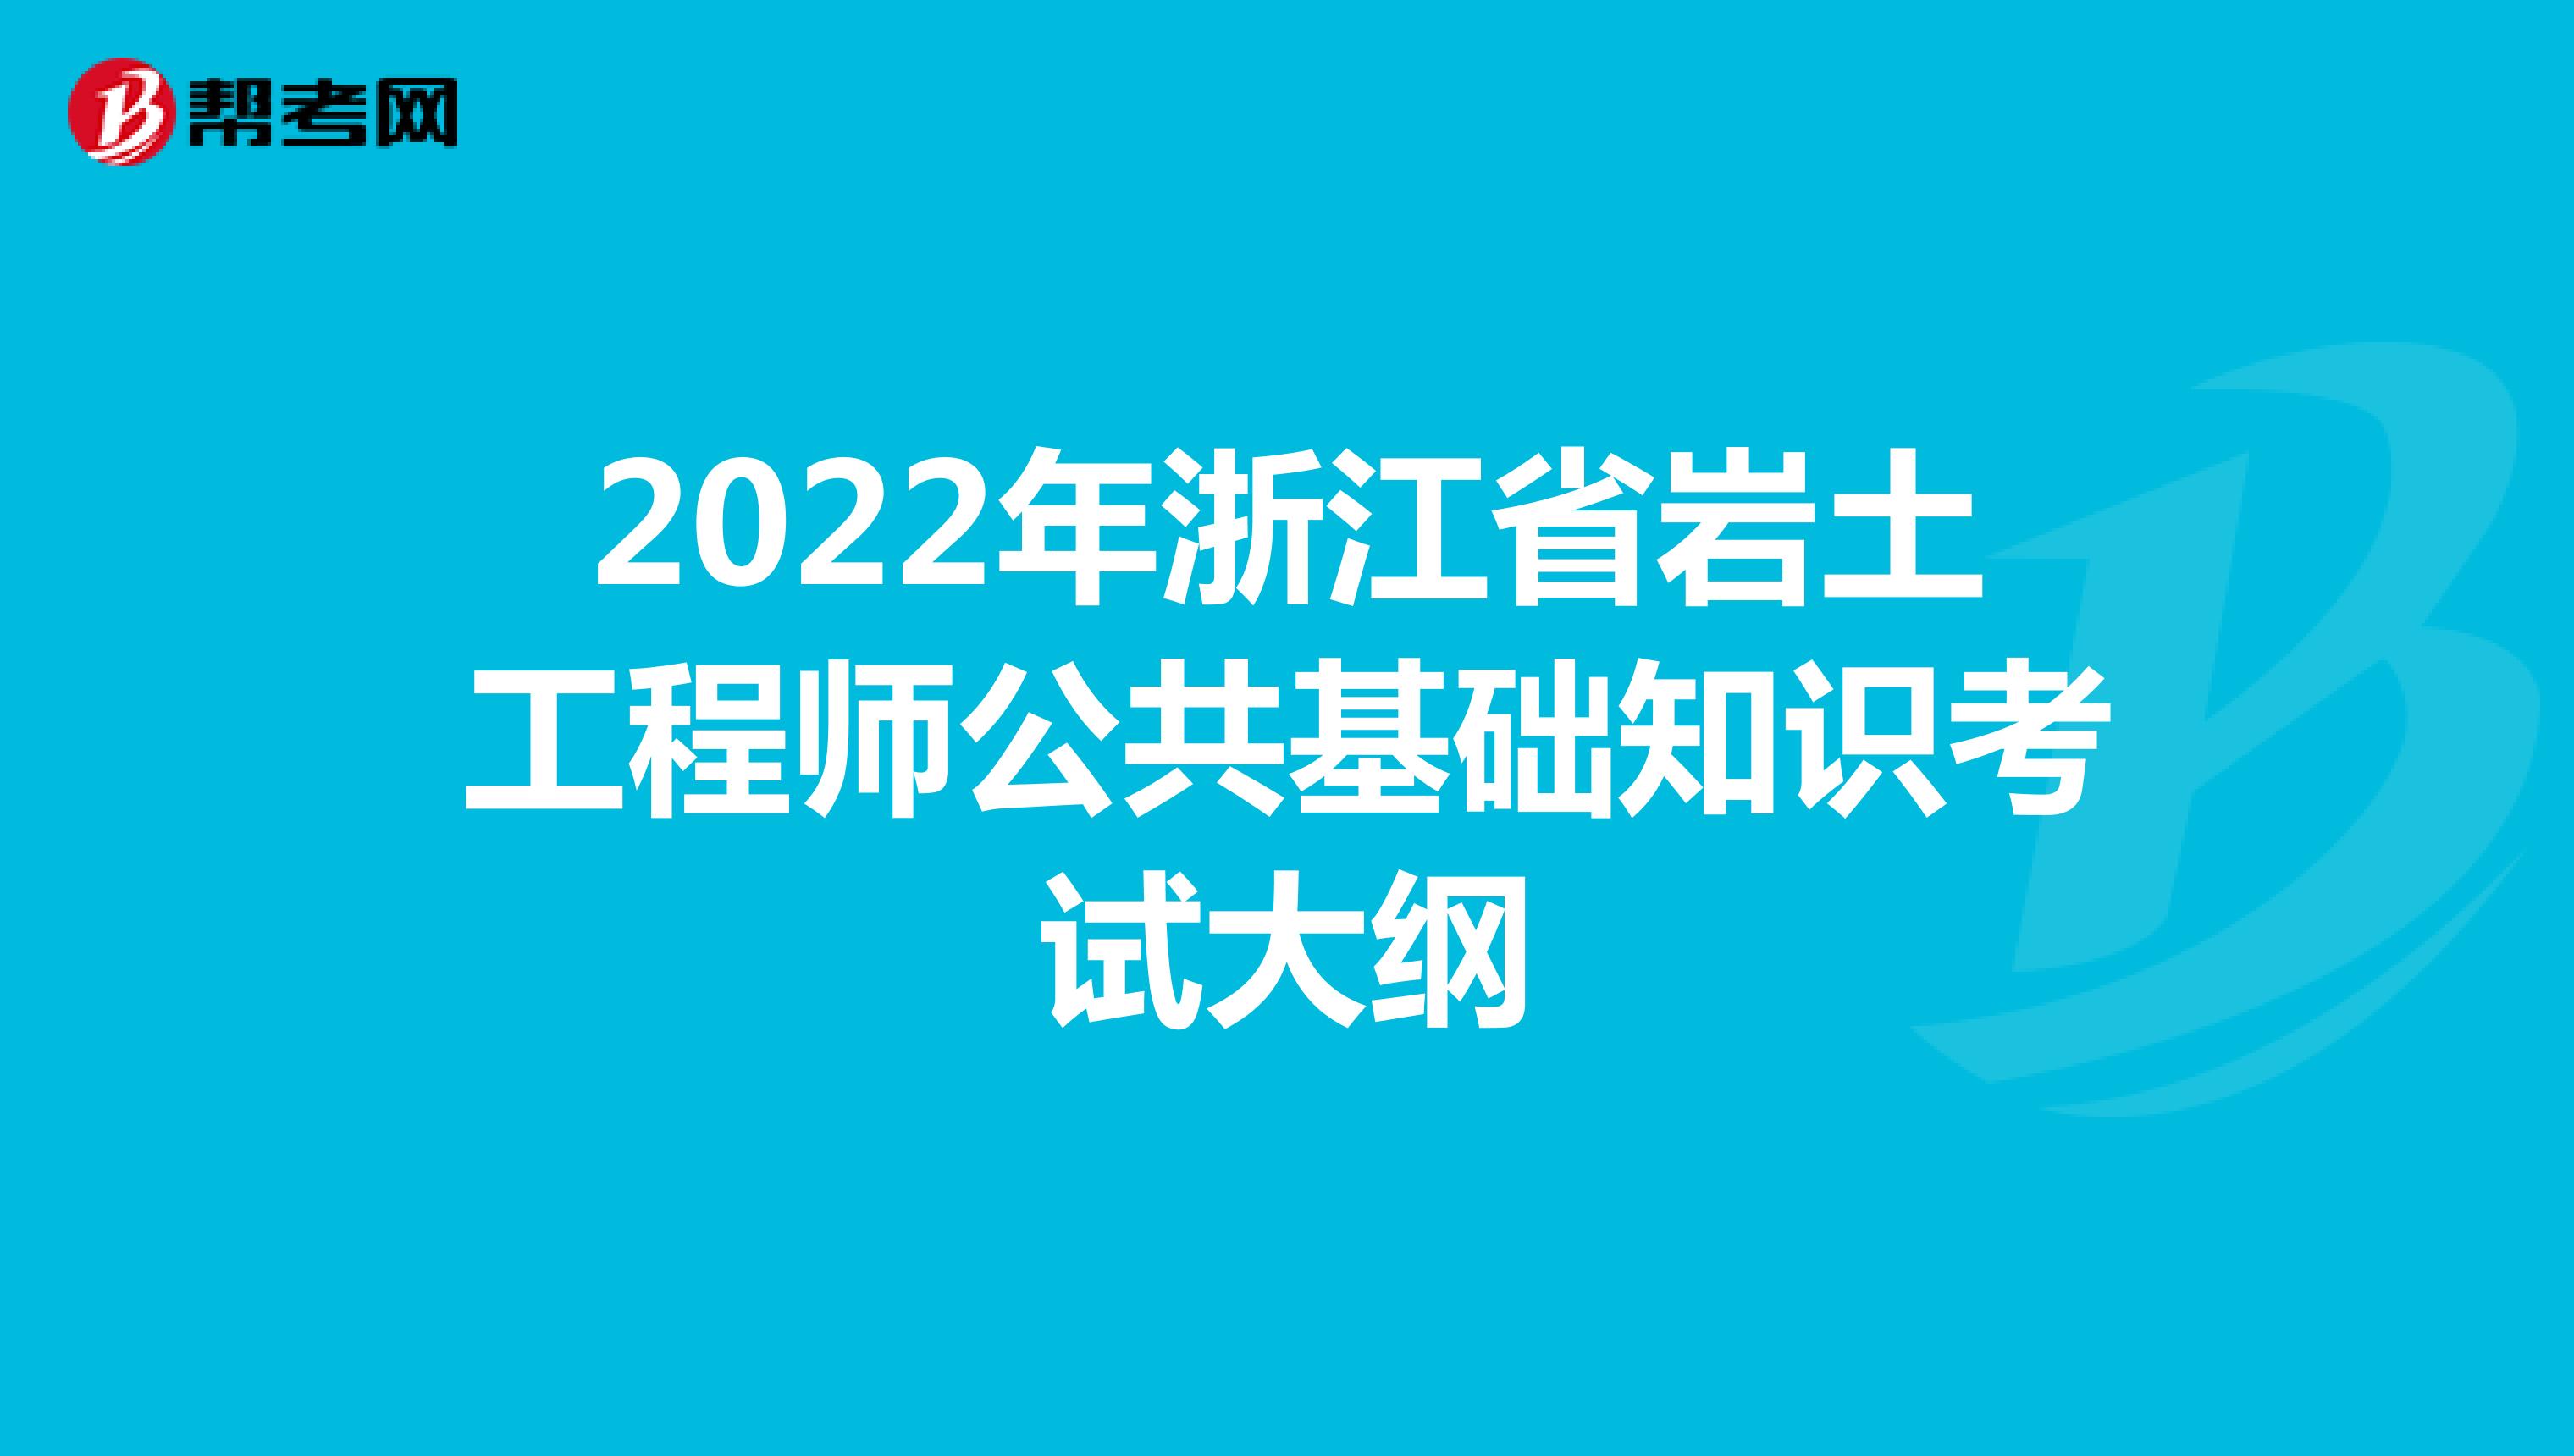 2022年浙江省岩土工程师公共基础知识考试大纲